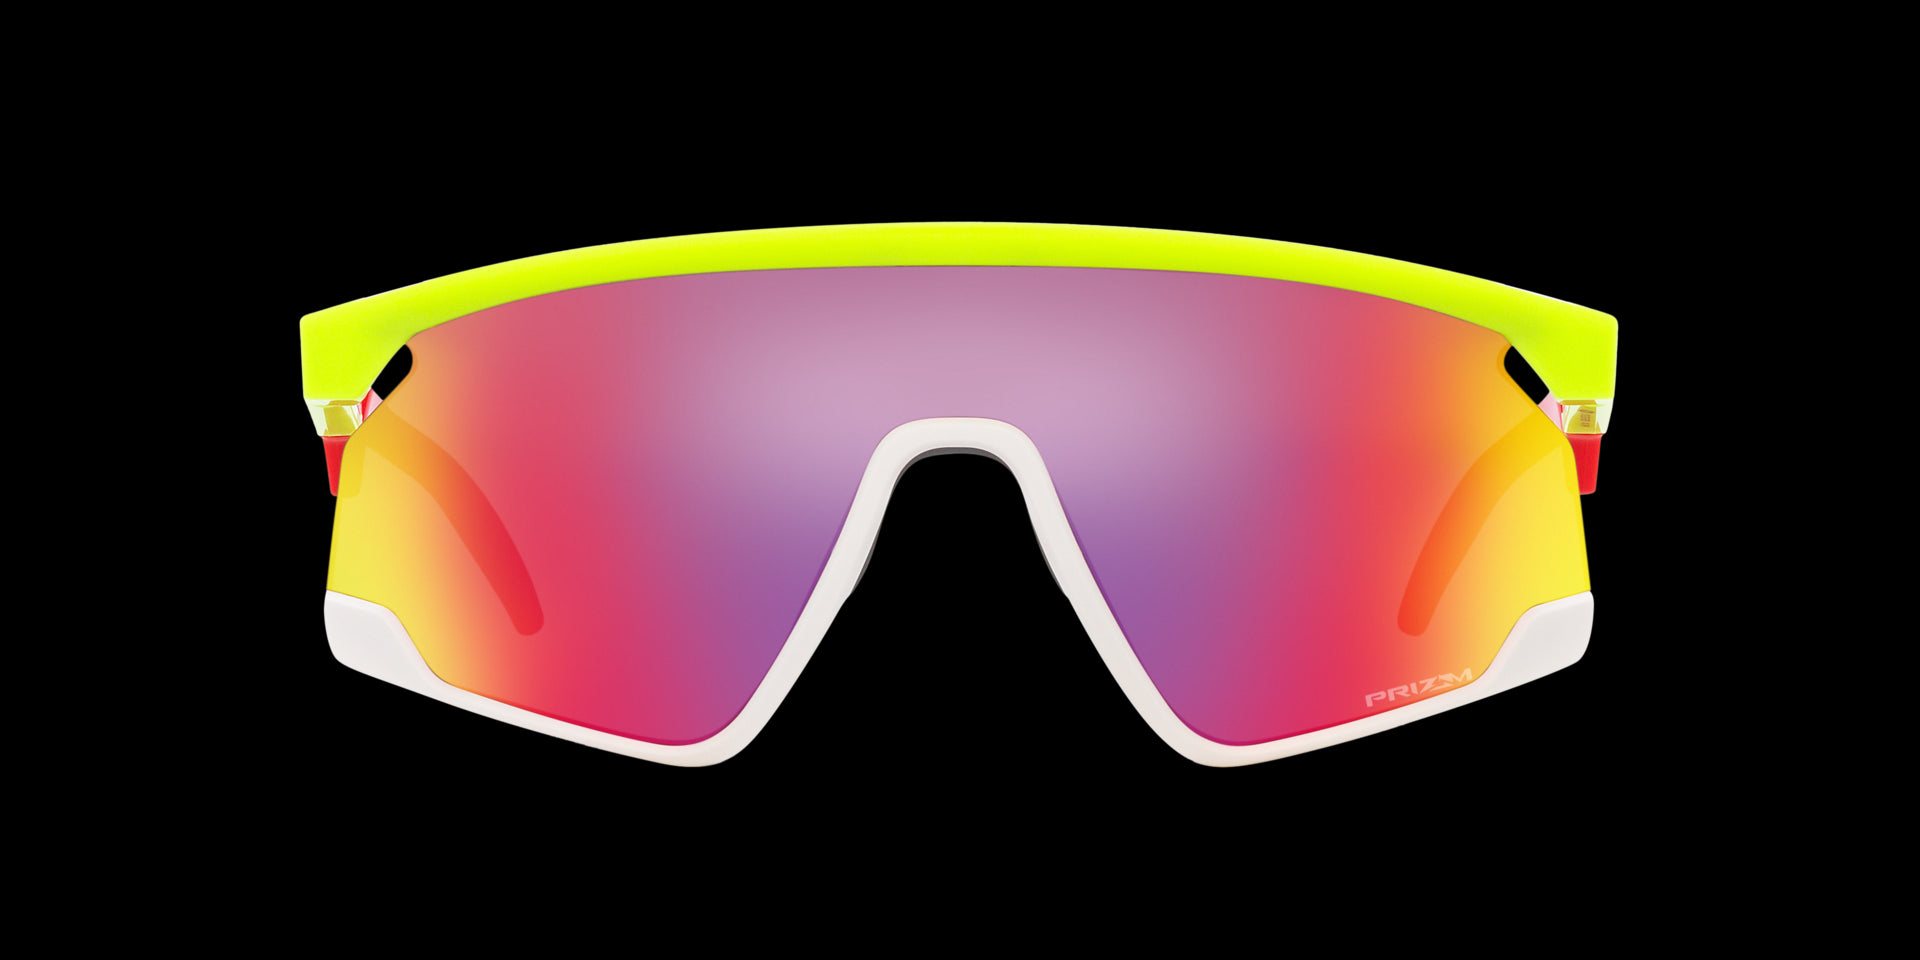 Yellow/white/purple BXTR sunglasses